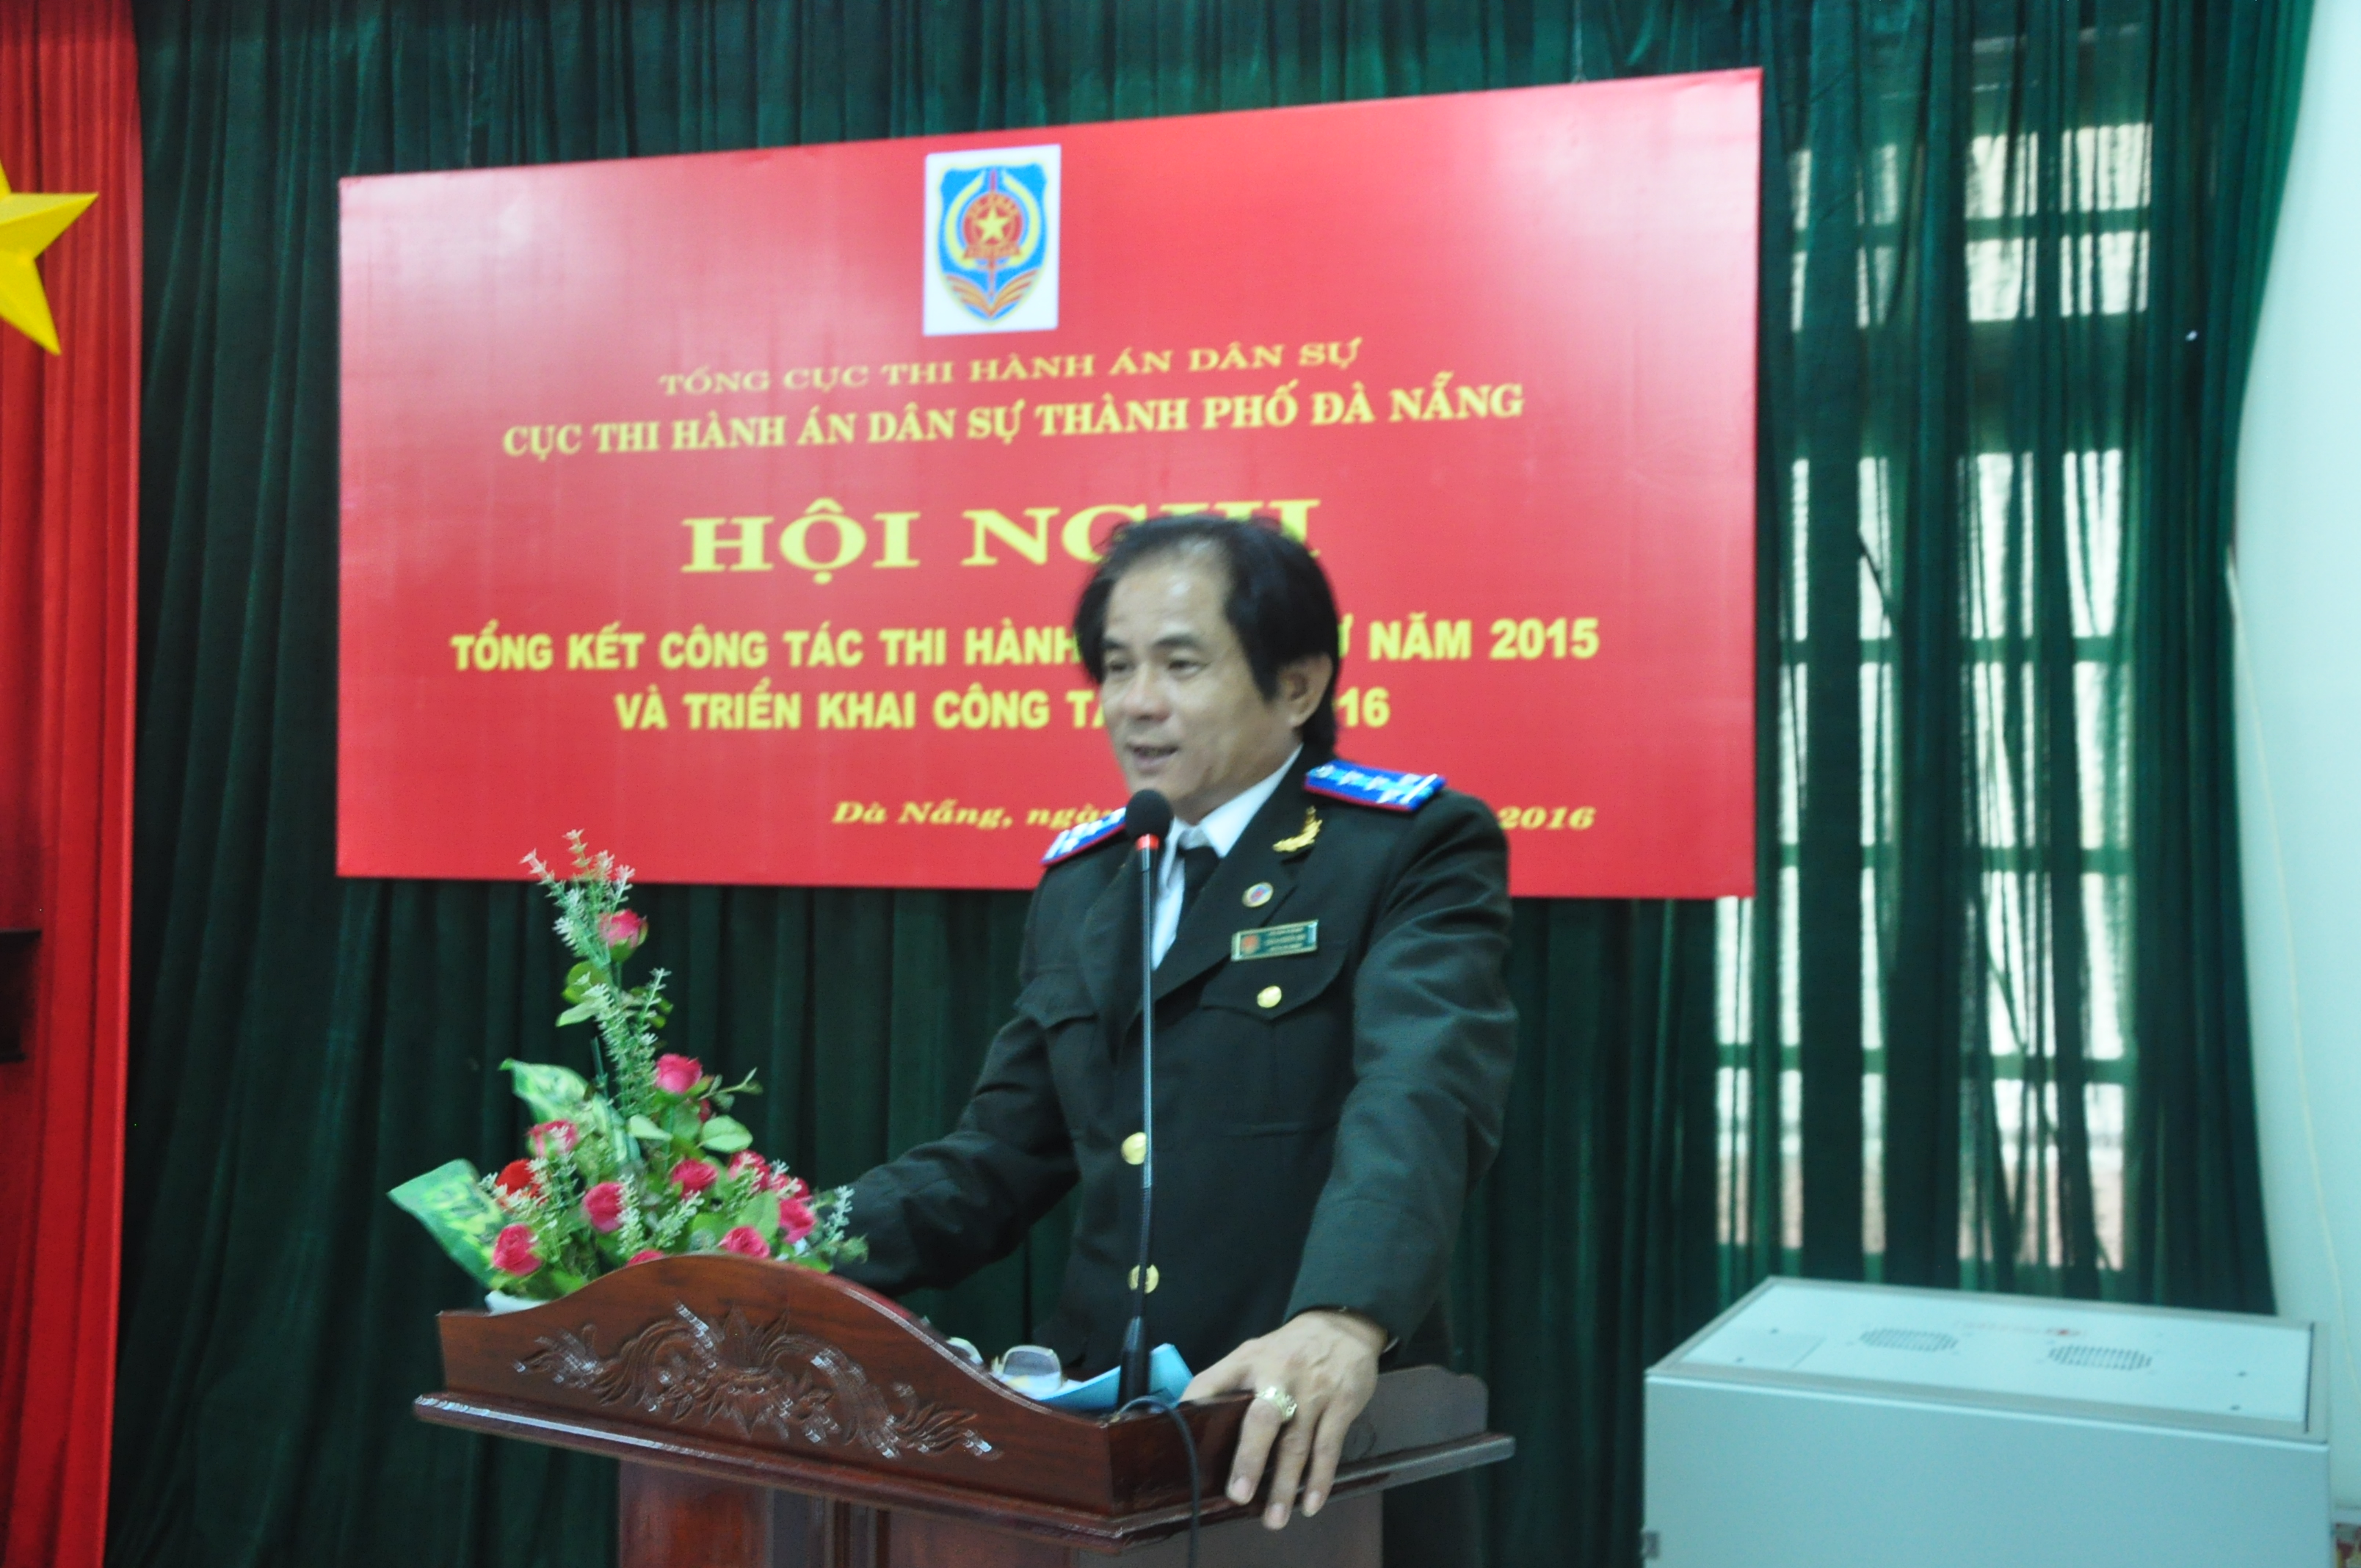 Cục Thi hành án dân sự TP Đà Nẵng tổ chức Hội nghị tổng kết công tác Thi hành án sự năm 2015 và triển khai công tác năm 2016